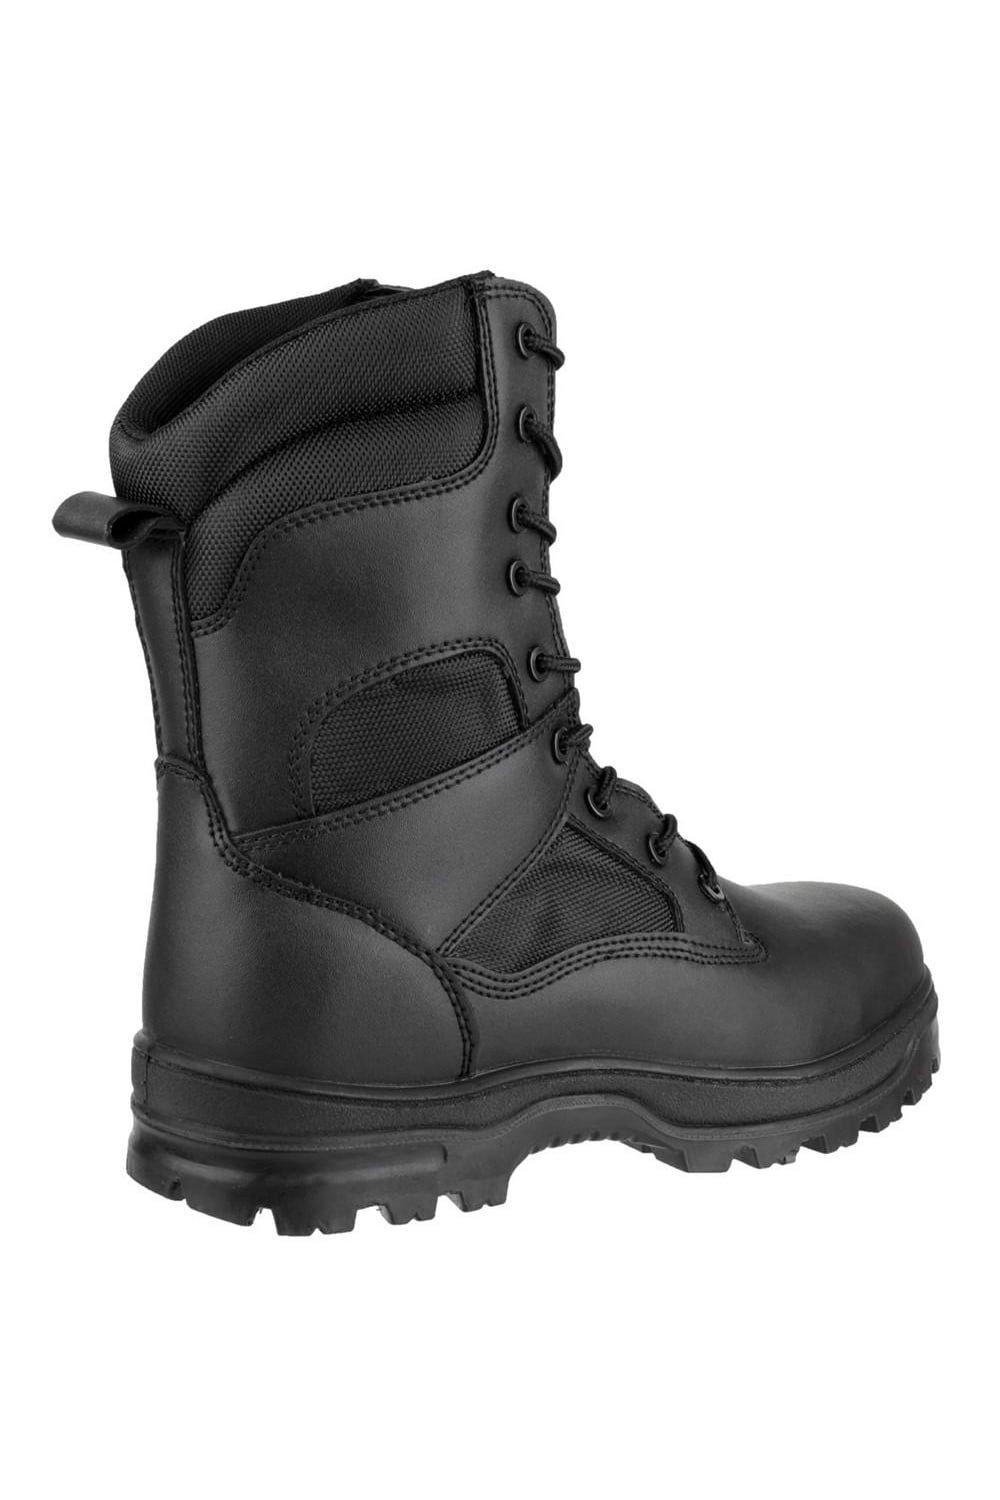 Защитные ботинки FS009C Amblers, черный